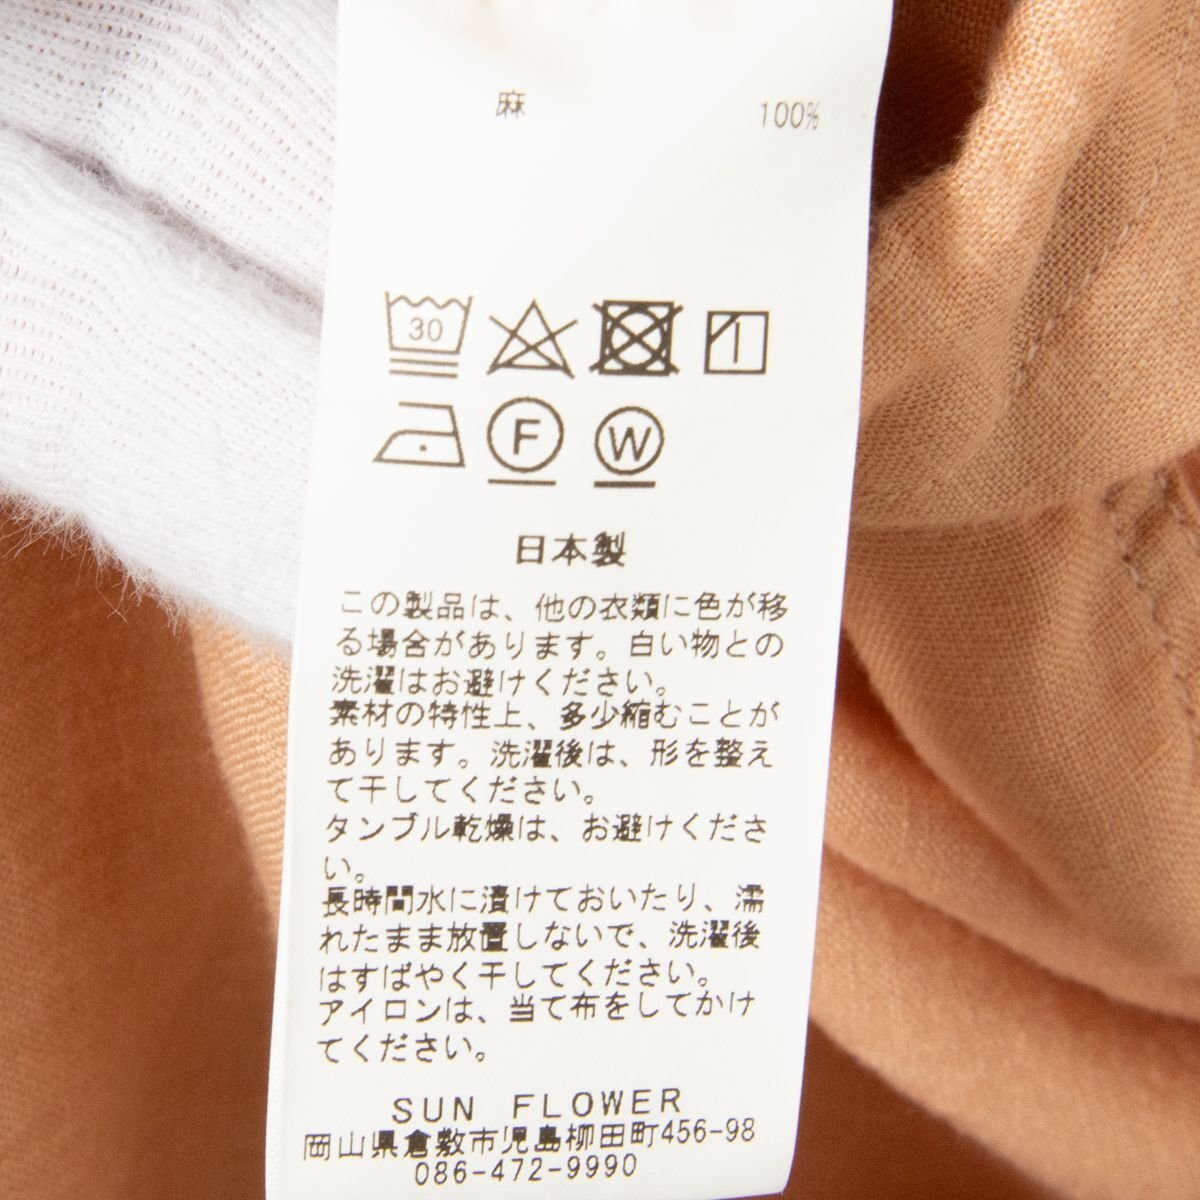 [1 иен старт ]ARTE POVERA arte Poe velalinen 7 минут рукав рубашка большой размер лен 100% натуральный одноцветный незначительный orange M сделано в Японии весна лето 